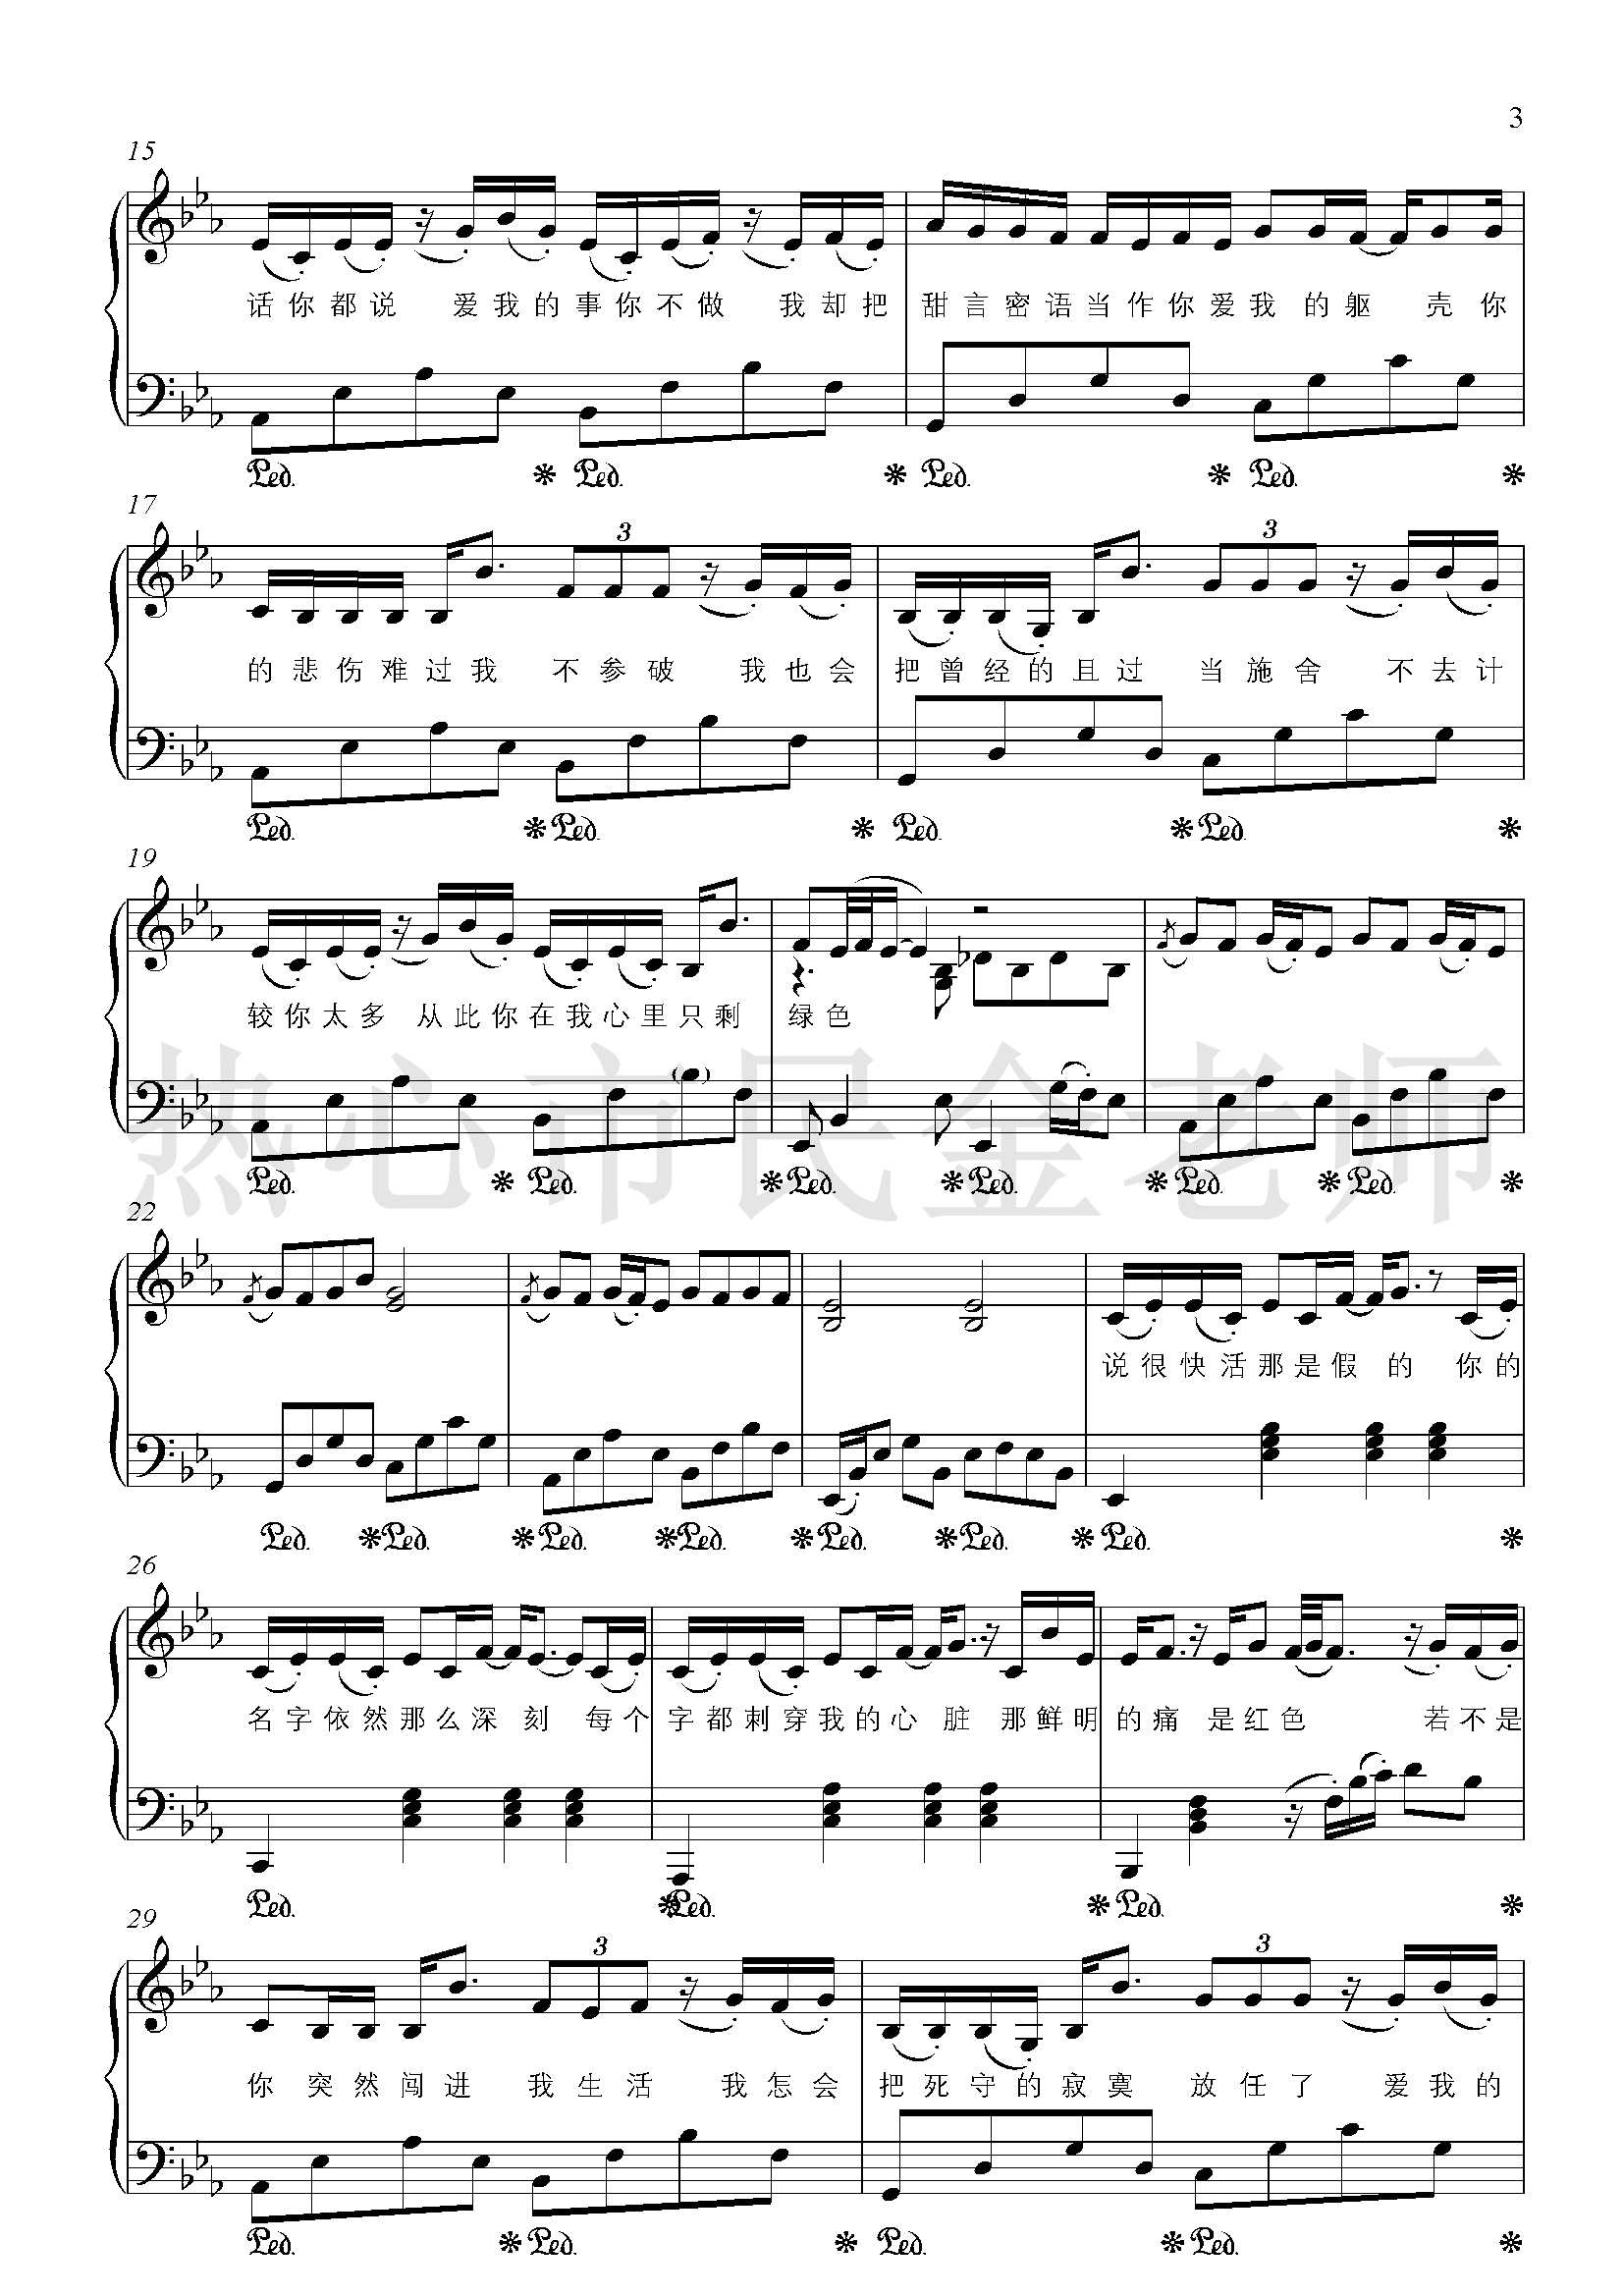 绿色钢琴谱-金老师独奏1904113